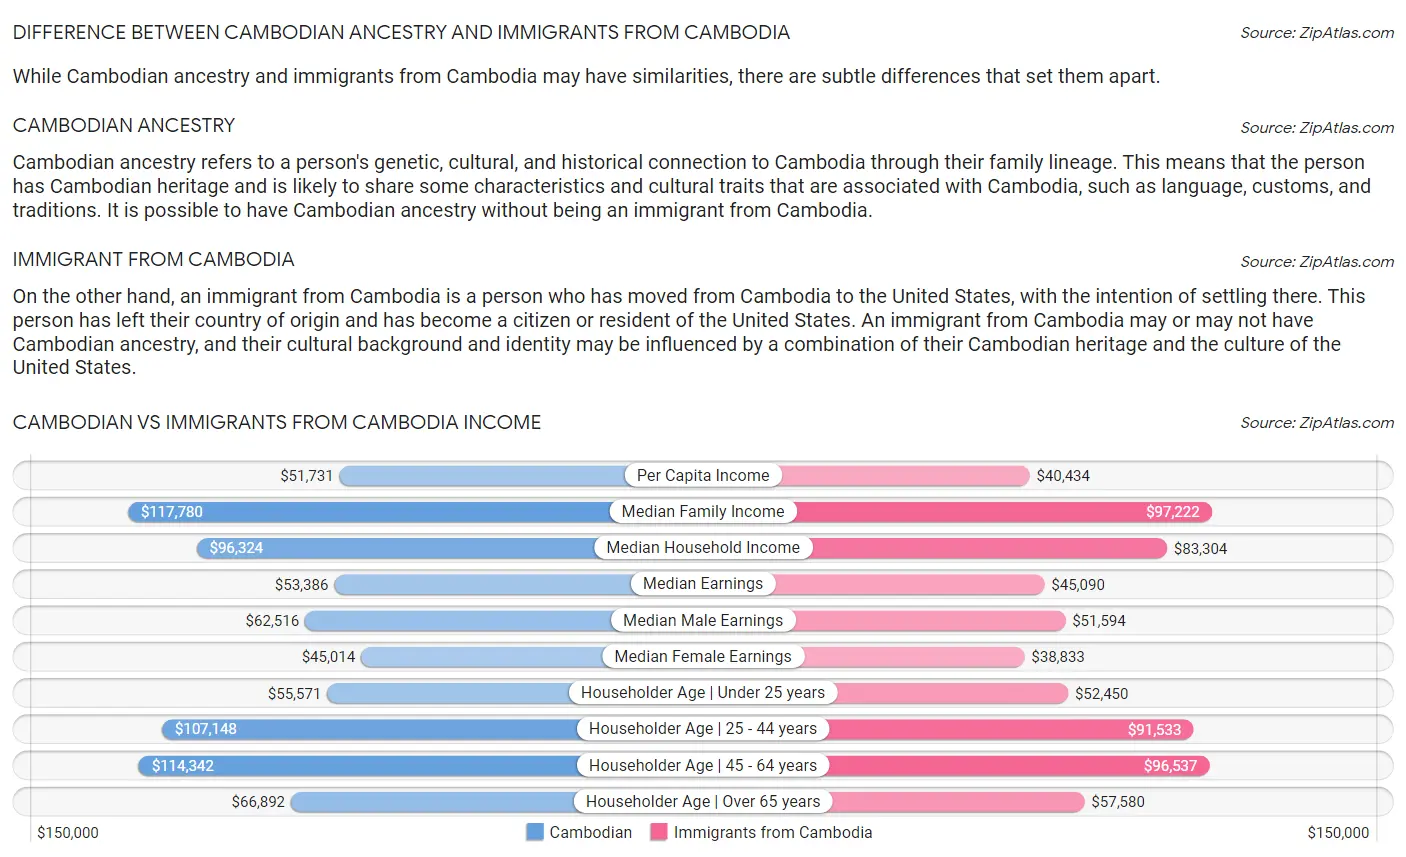 Cambodian vs Immigrants from Cambodia Income